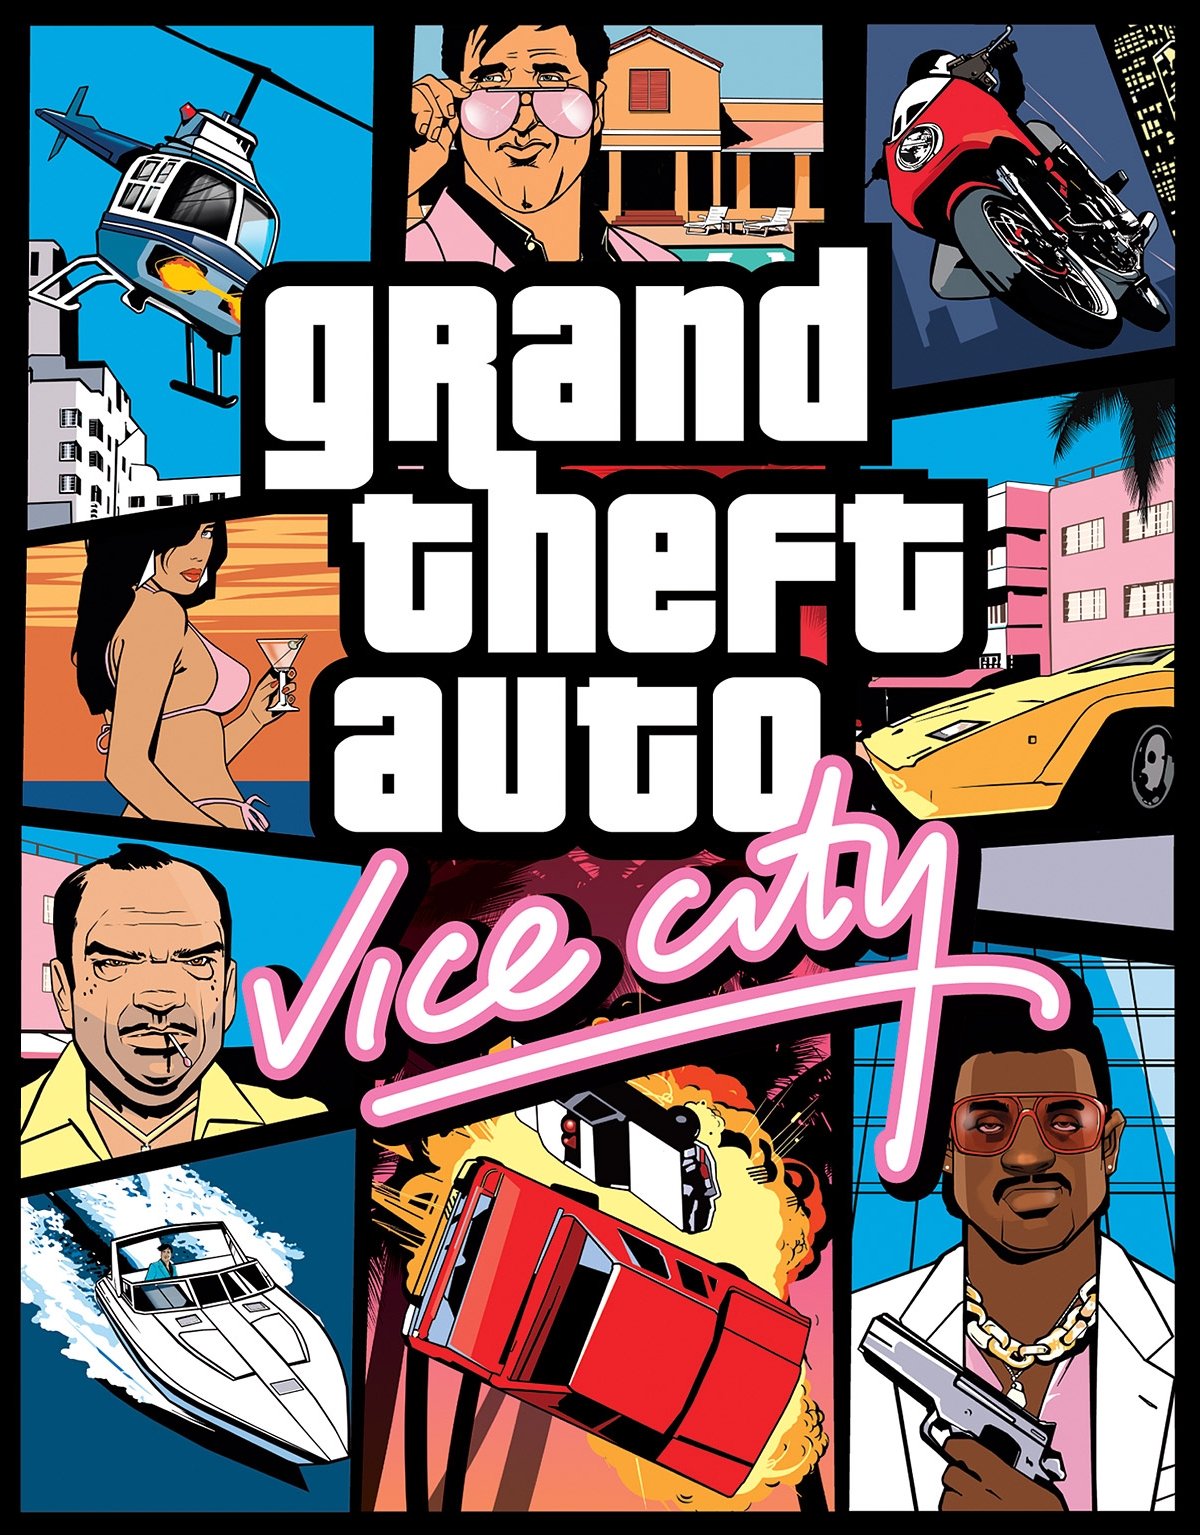 Grand Theft Auto: The Ballad of Gay Tony – Wikipédia, a enciclopédia livre